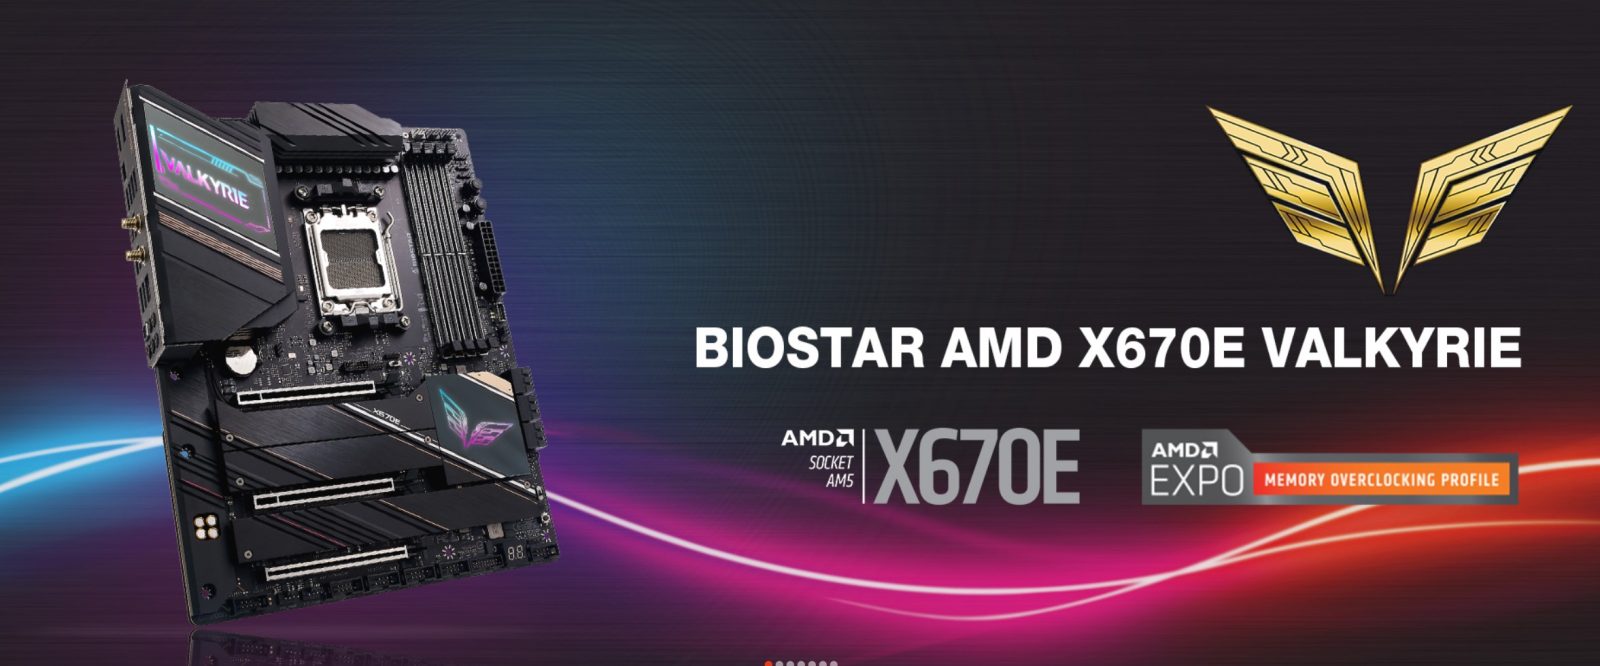 Biostar X670E VALKYRIE Review: Ready for Ryzen 7000